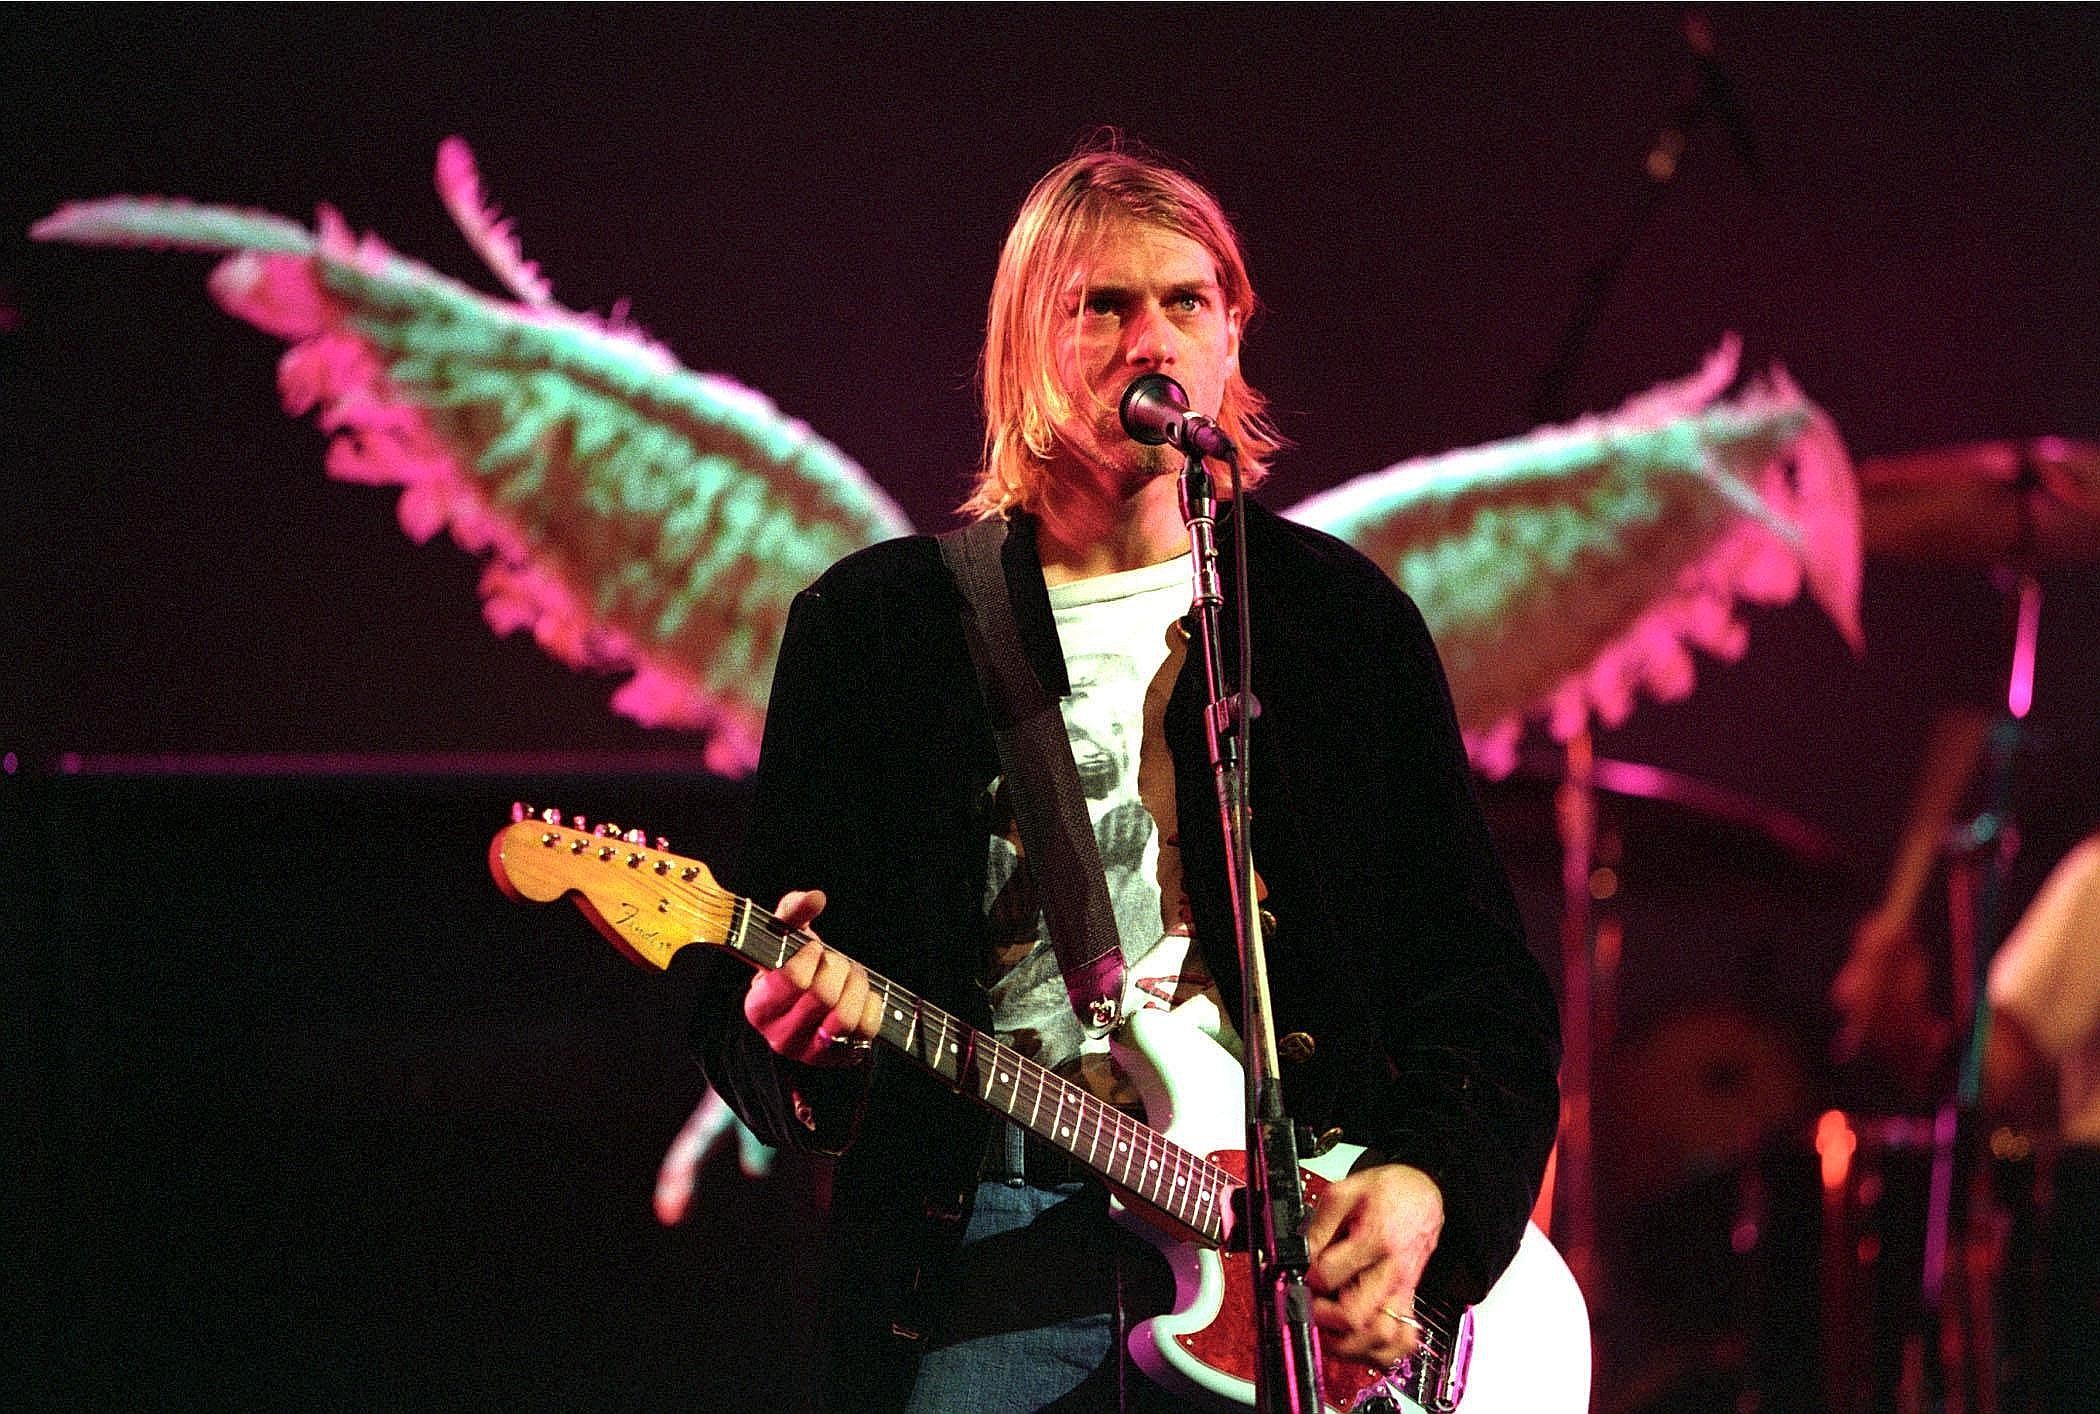 ... den Freitod gewählt. Für die Medien jedoch war klar, welcher Club hier tatsächlich gemeint war. Schließlich zählte Cobain 27 Jahre, als ...